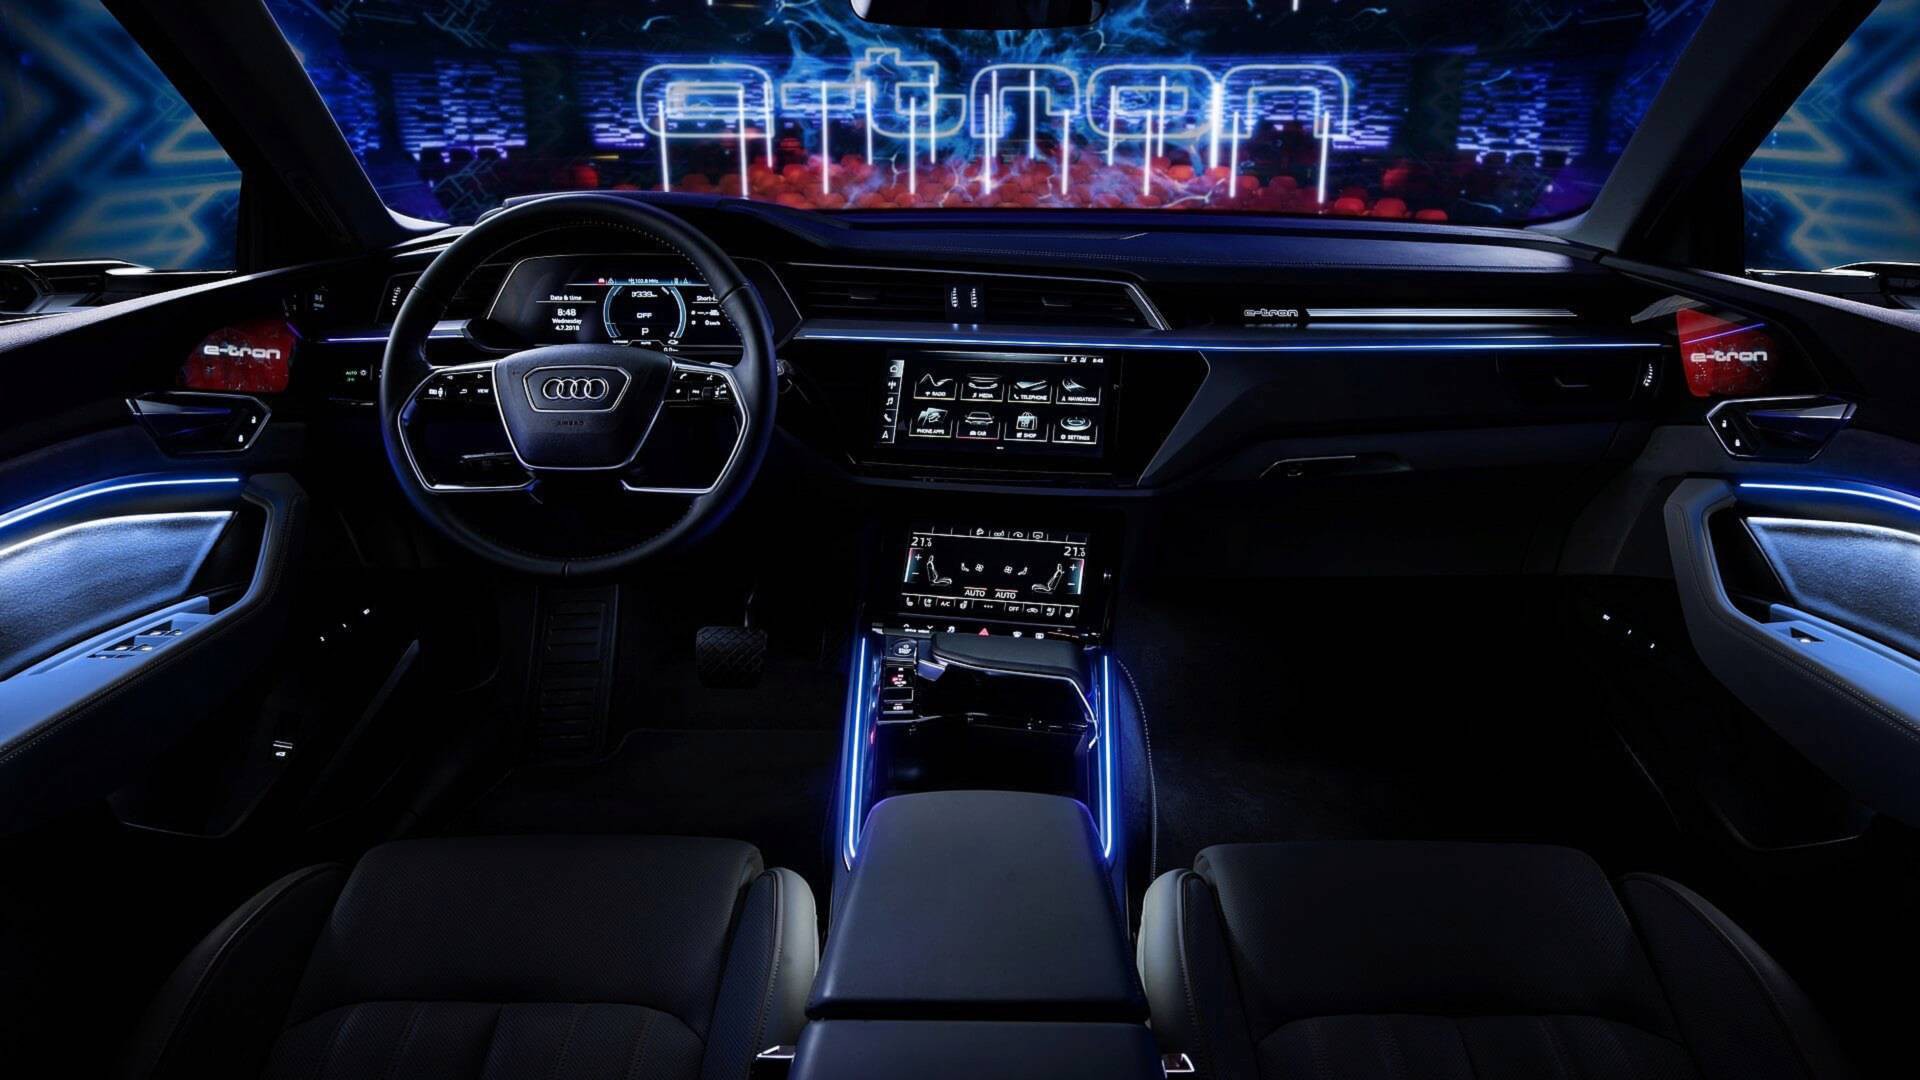 Audi, nội thất, 5 màn hình, hiện đại. Với Audi, bạn sẽ được trải nghiệm một không gian lái xe hiện đại và đầy đủ công nghệ. Với 5 màn hình trong xe, bạn sẽ không bỏ lỡ bất cứ thông tin gì. Đến với Audi, và tận hưởng những trải nghiệm lái xe tuyệt vời nhất từ trước đến nay.